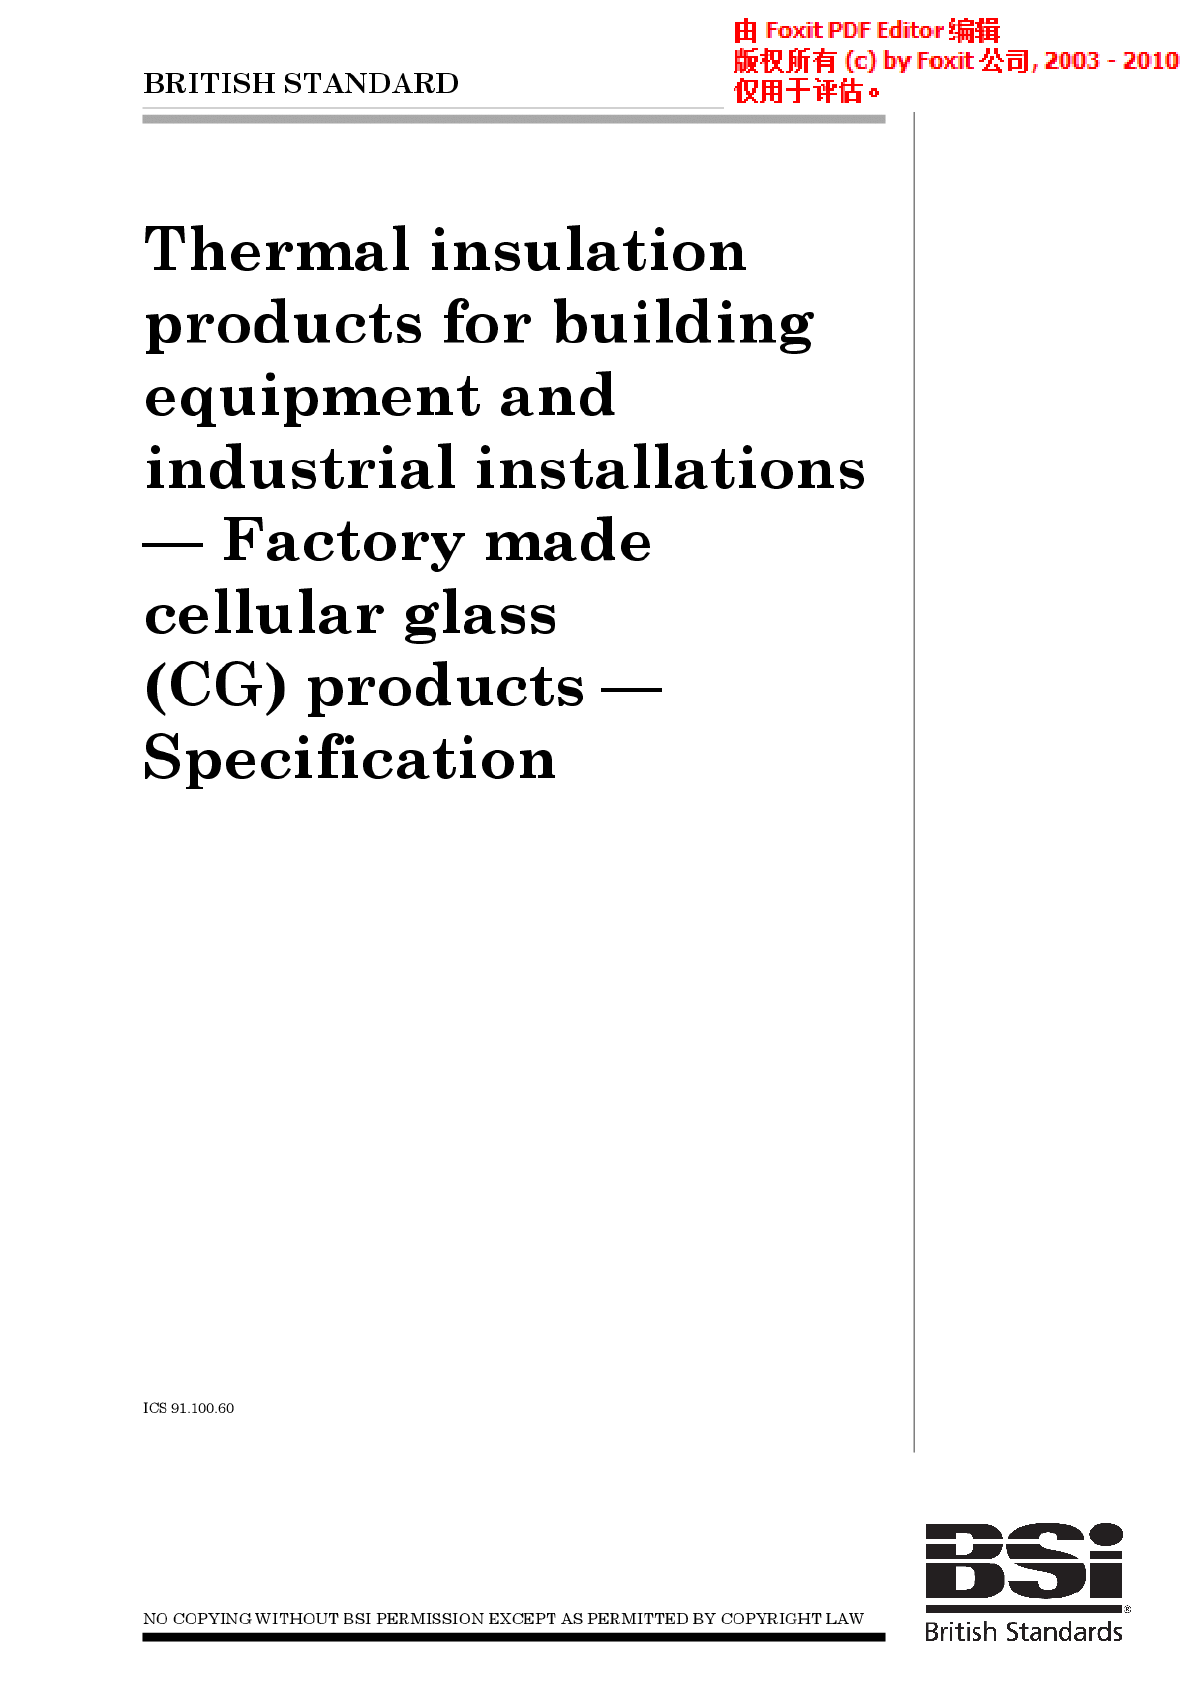 房屋建筑设备和工业装置用热绝缘产品.工厂制多孔玻璃(CG)产品.规范.规范-图一